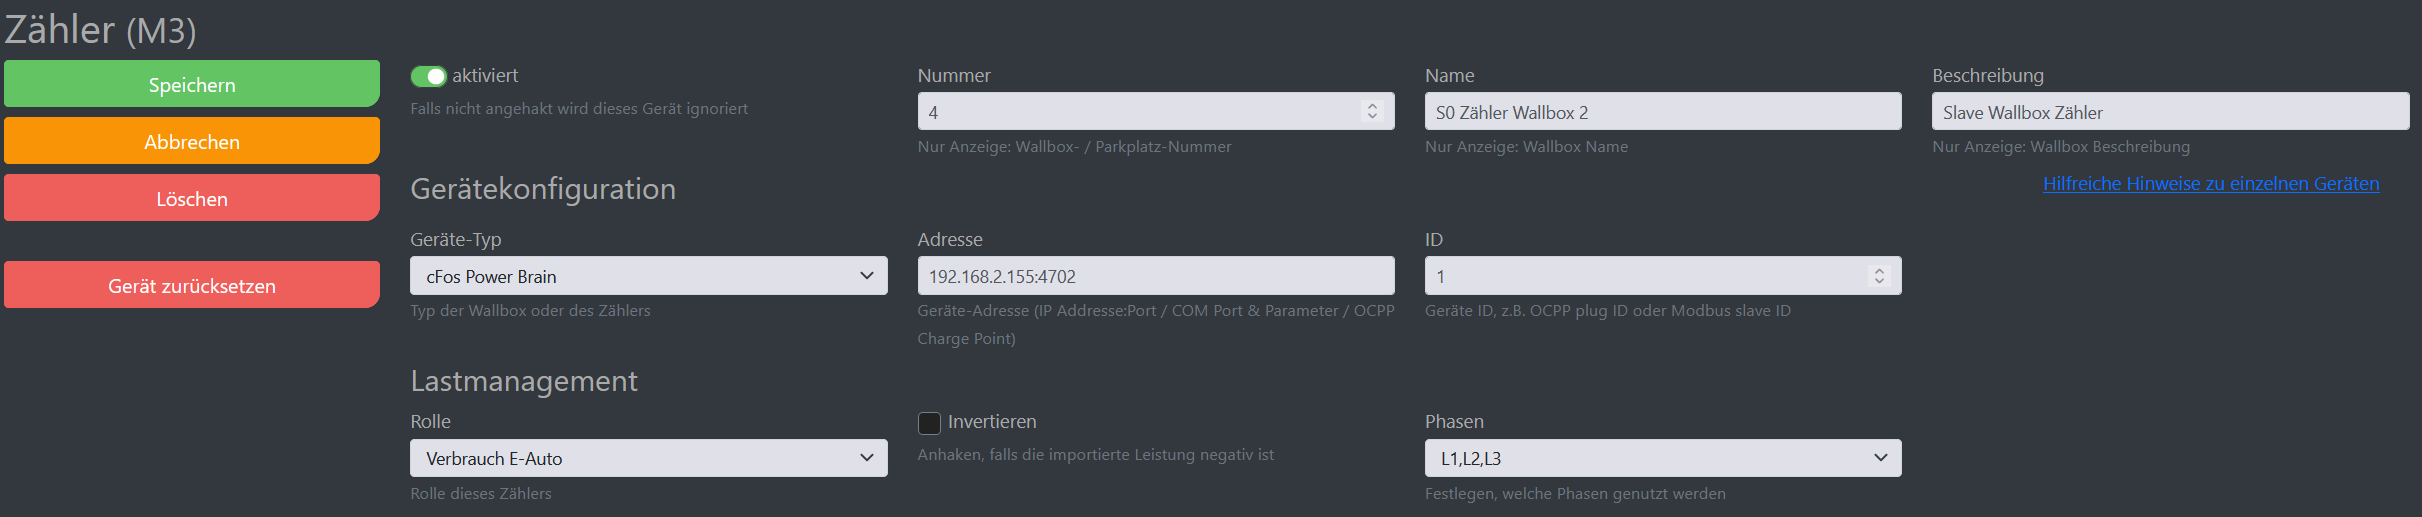 Img Snímek obrazovky konfigurace správce nabíjení cFos